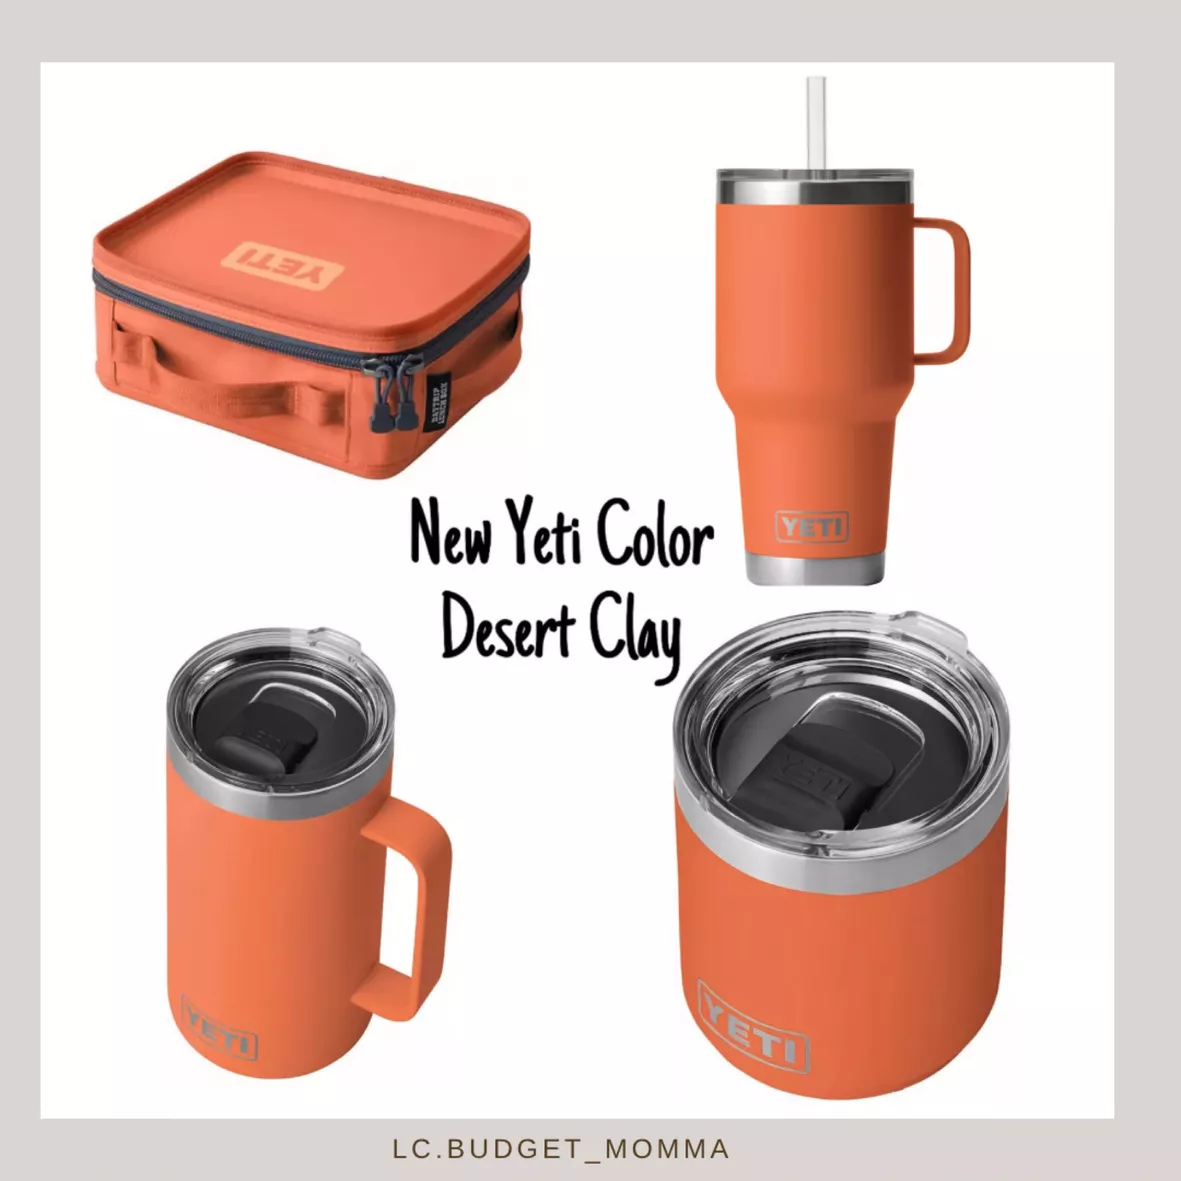 YETI 35 oz. Rambler Mug with Straw … curated on LTK